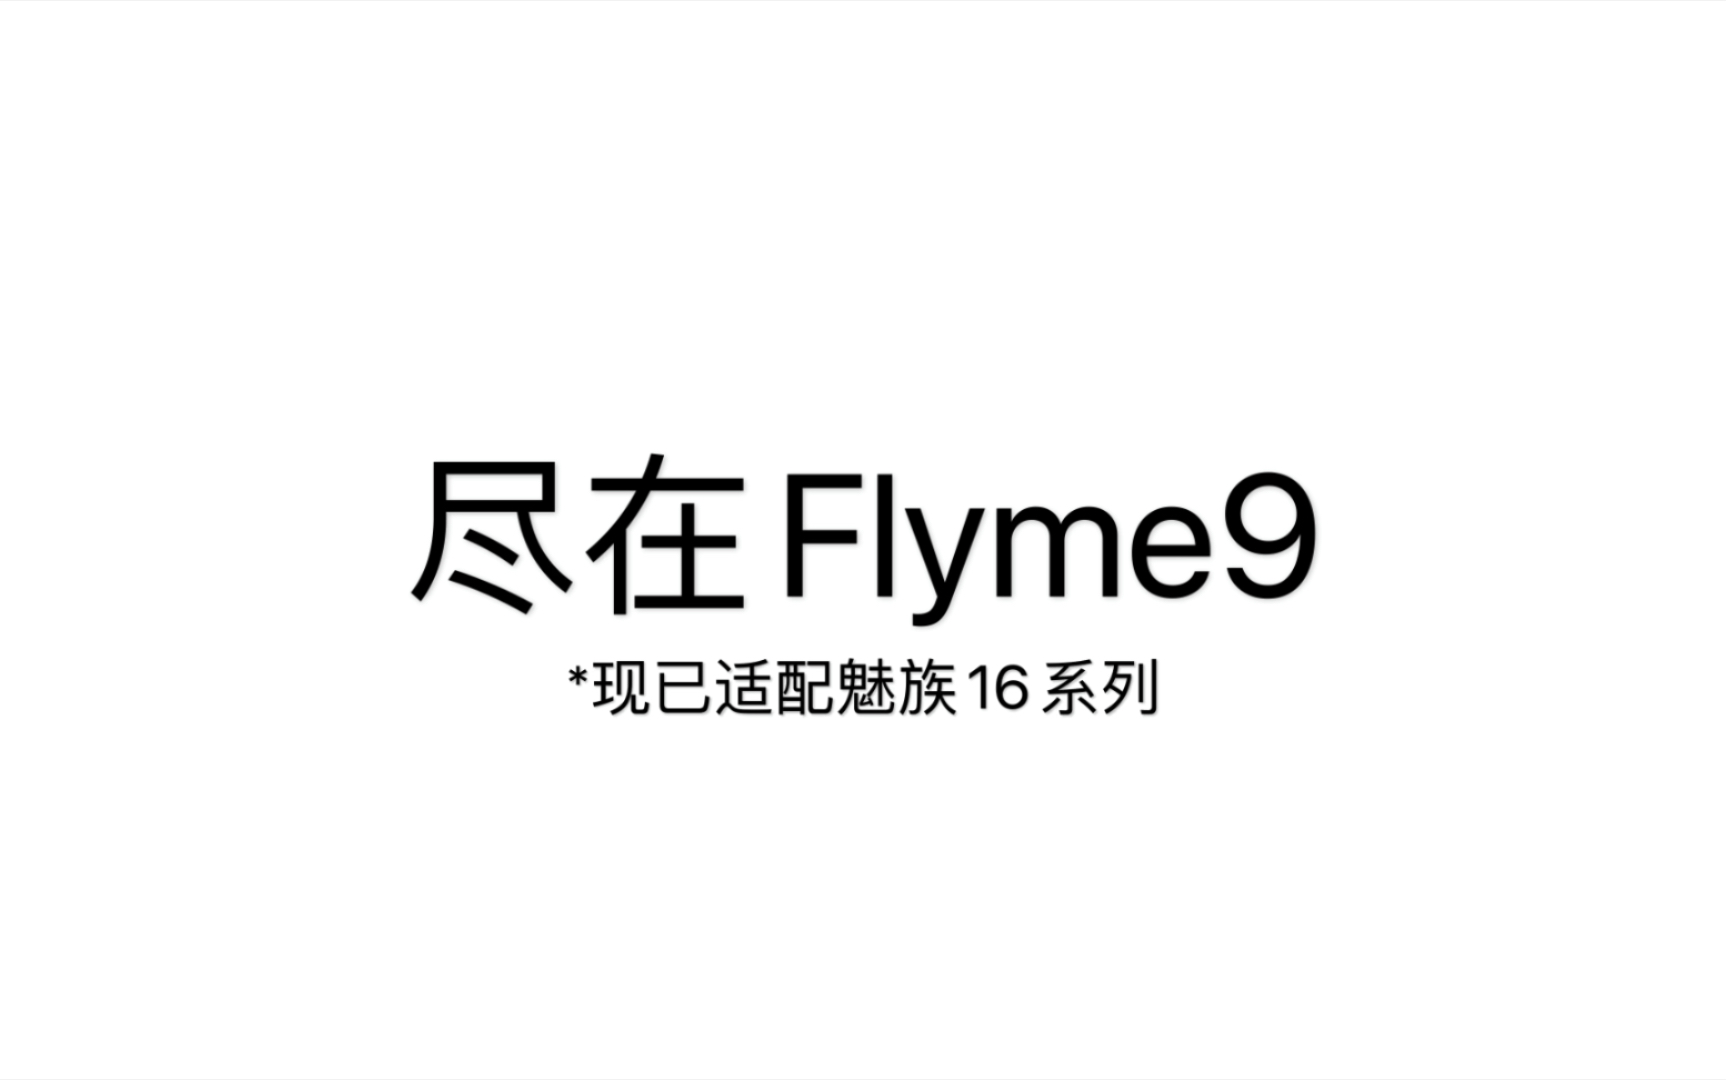 假如让苹果介绍flyme9